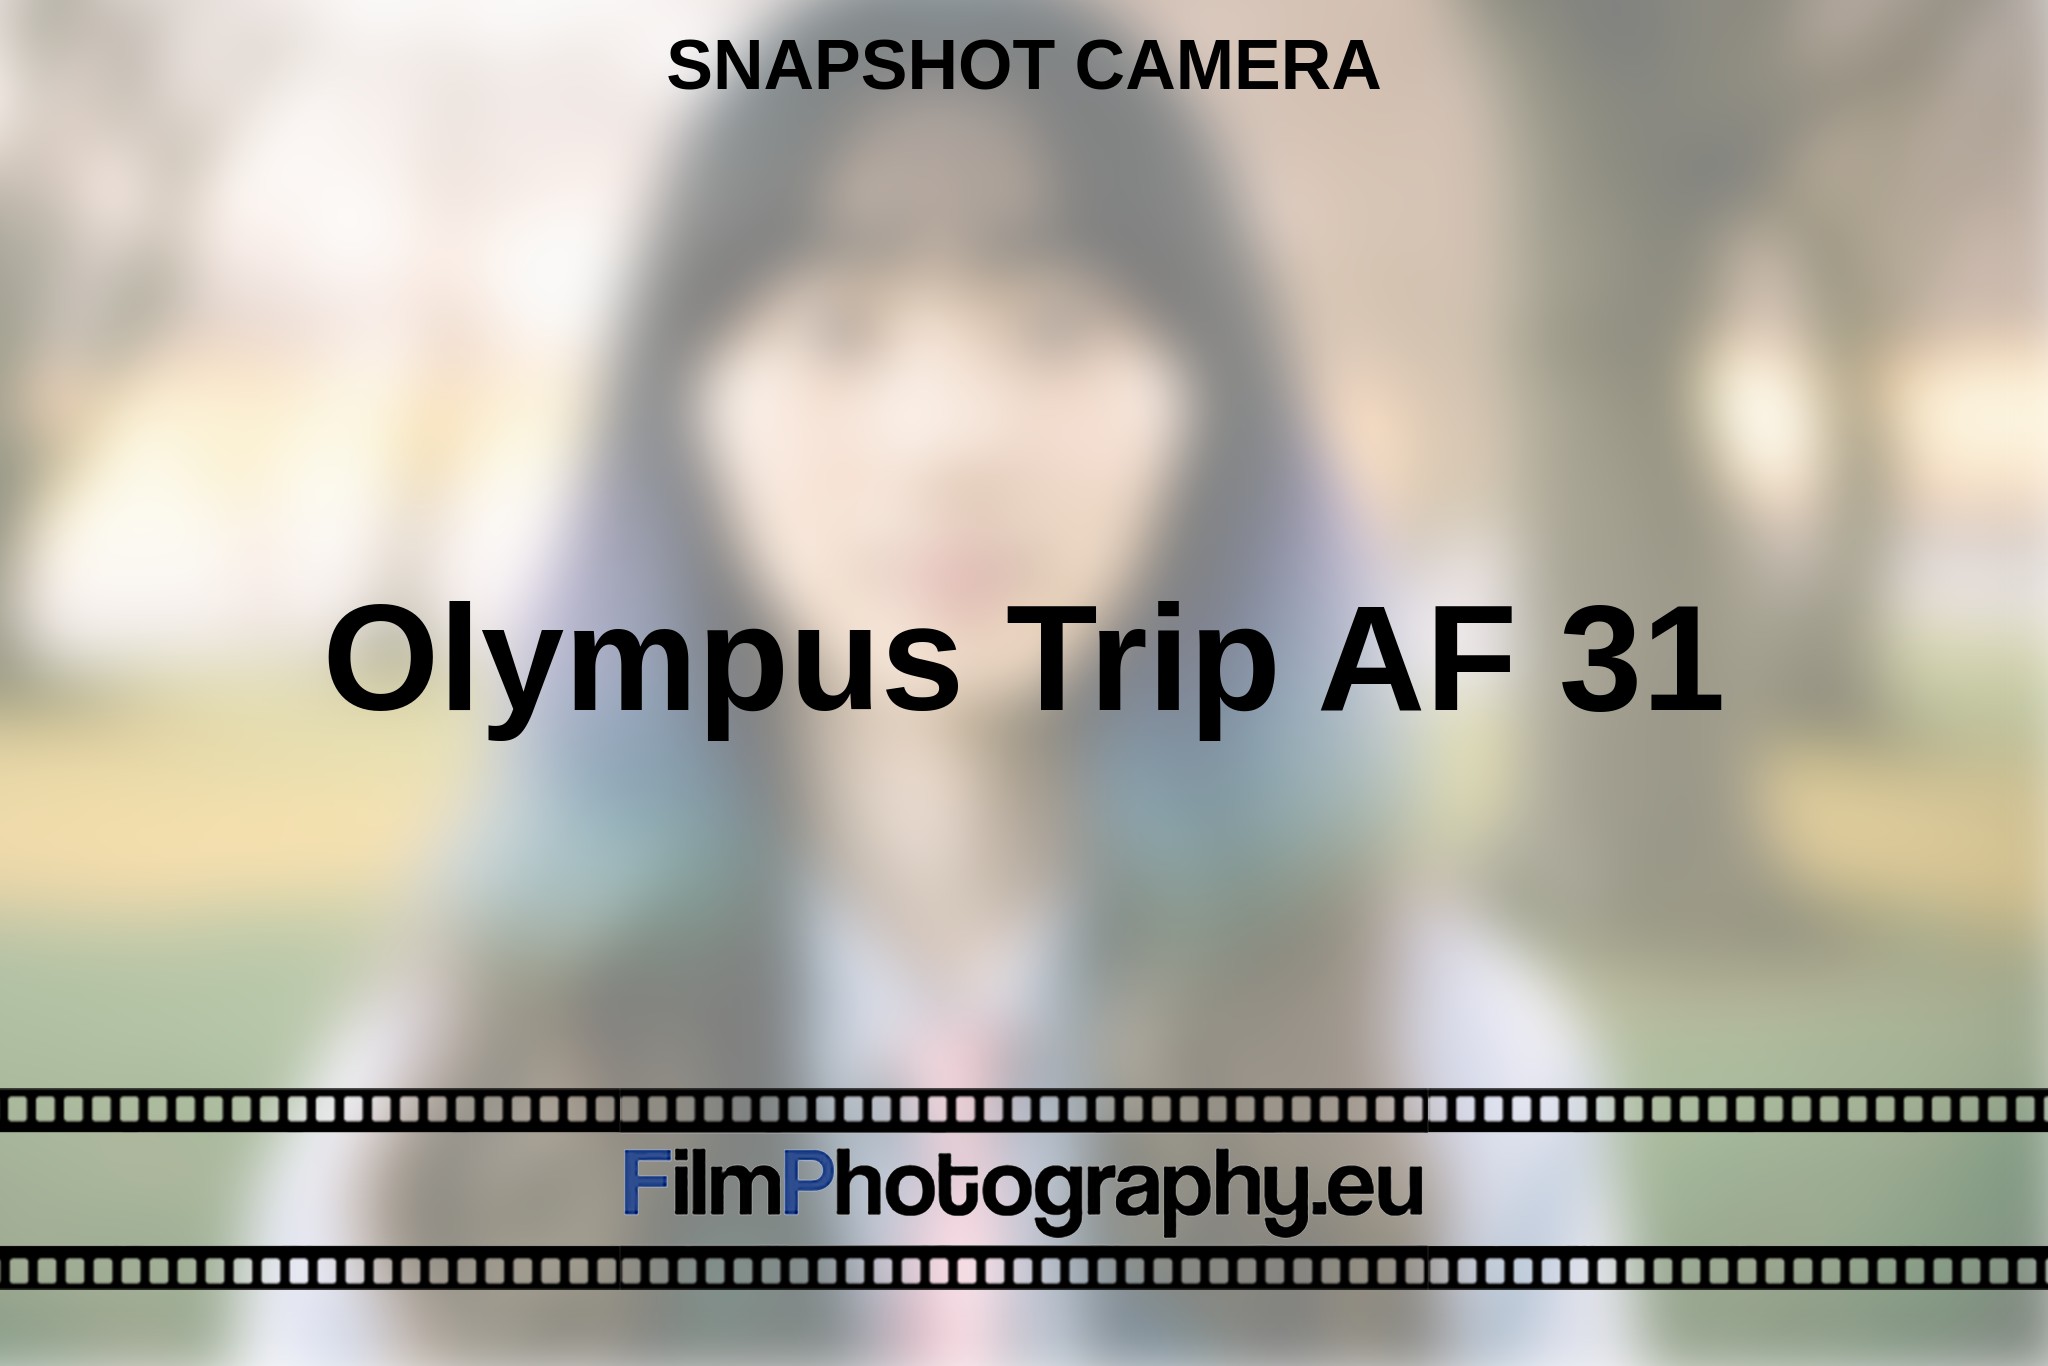 olympus-trip-af-31-snapshot-camera-en-bnv.jpg